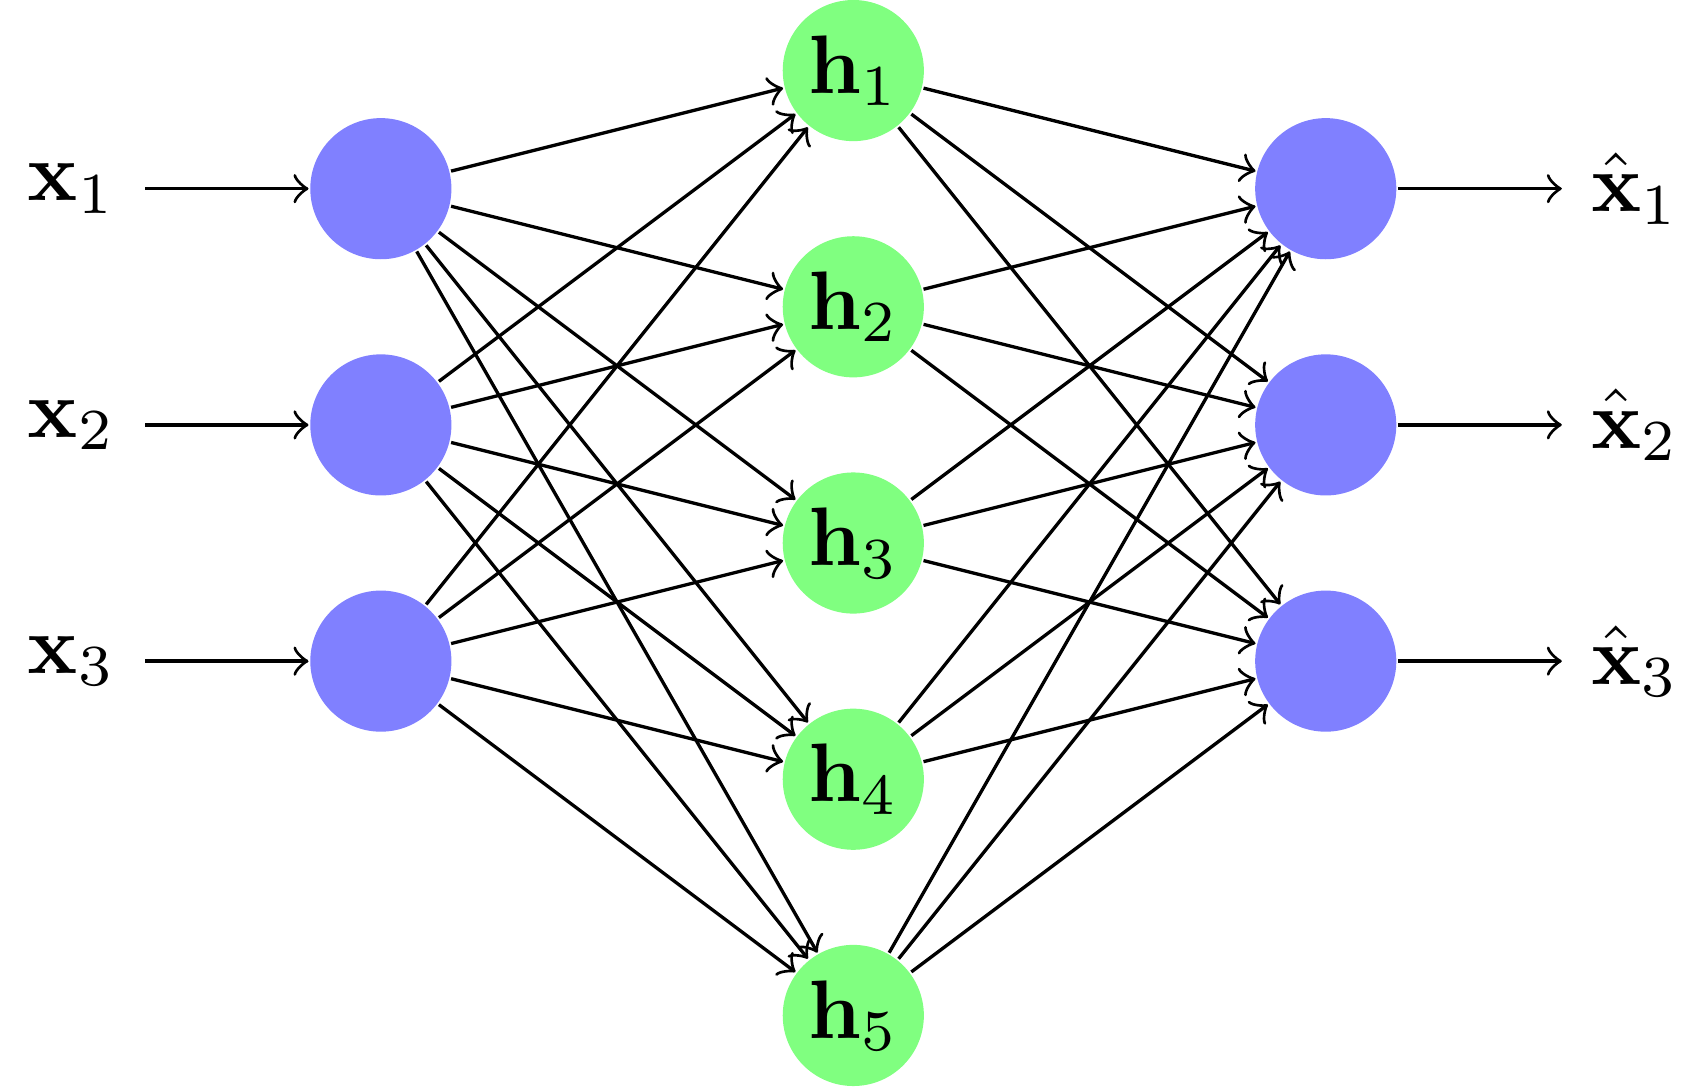 Un exemple de réseau over-complete